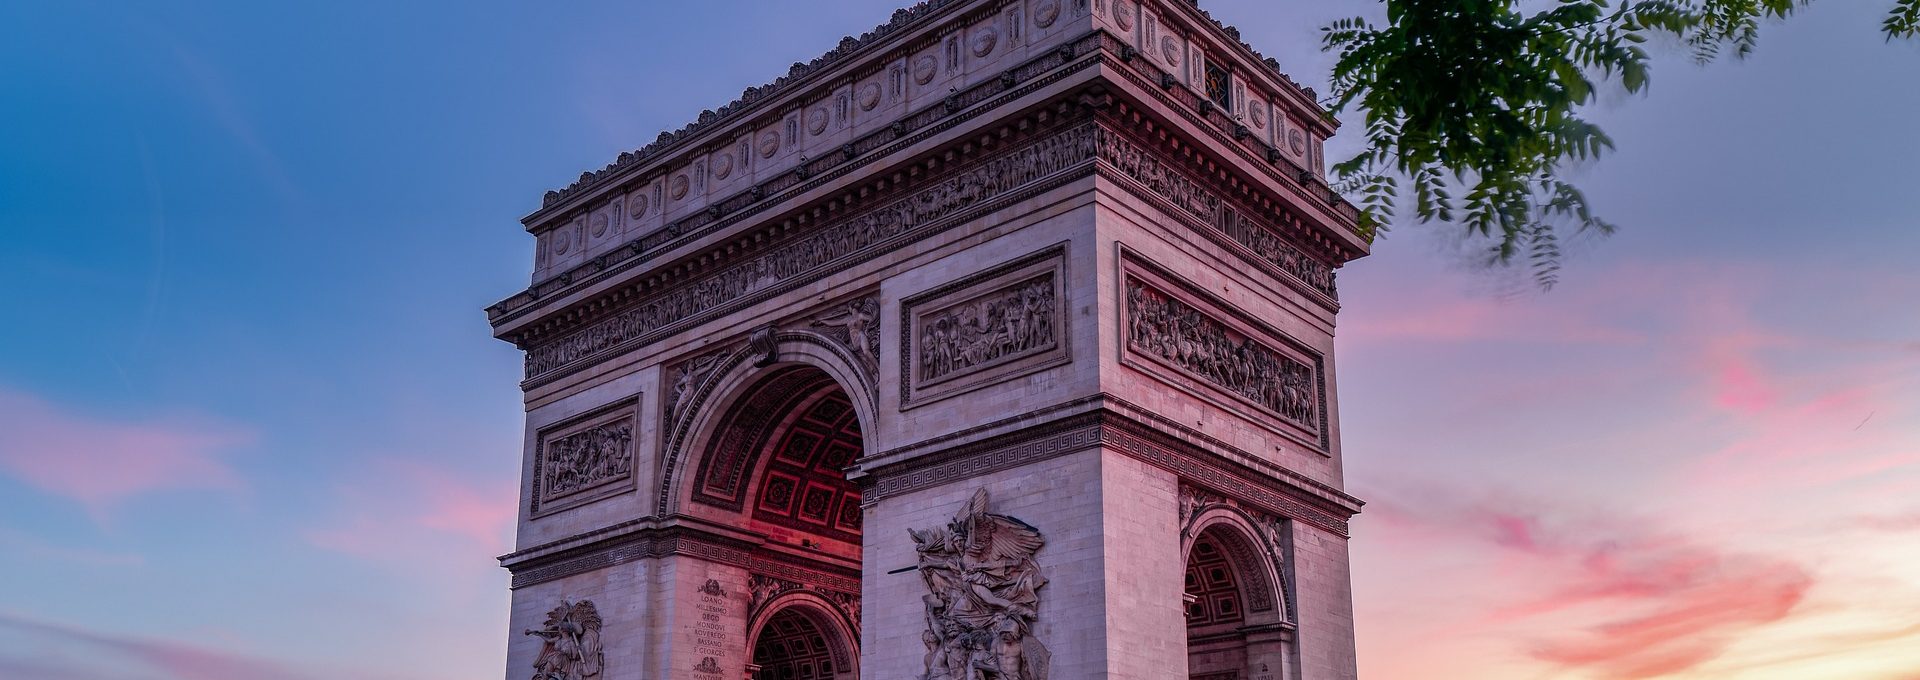 Vista do Arco do Triunfo em Paris